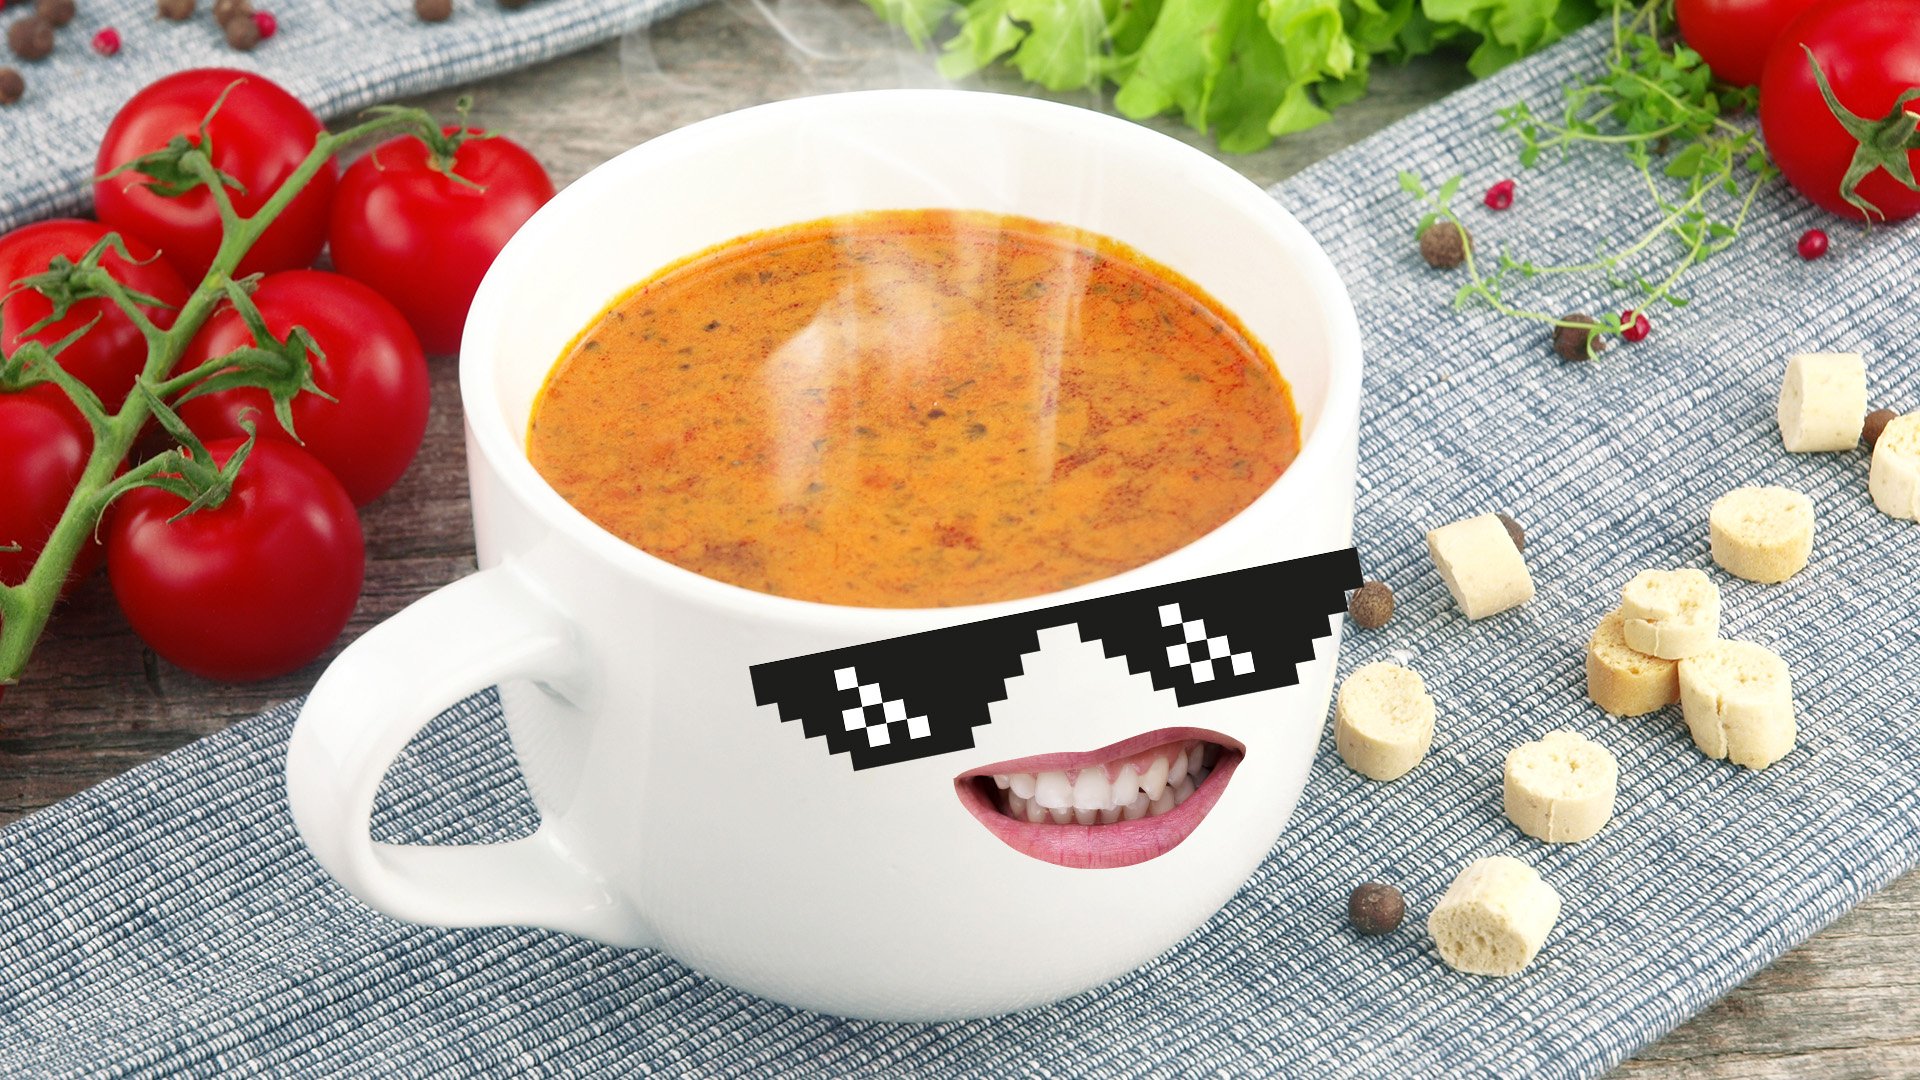 A hot mug of soup